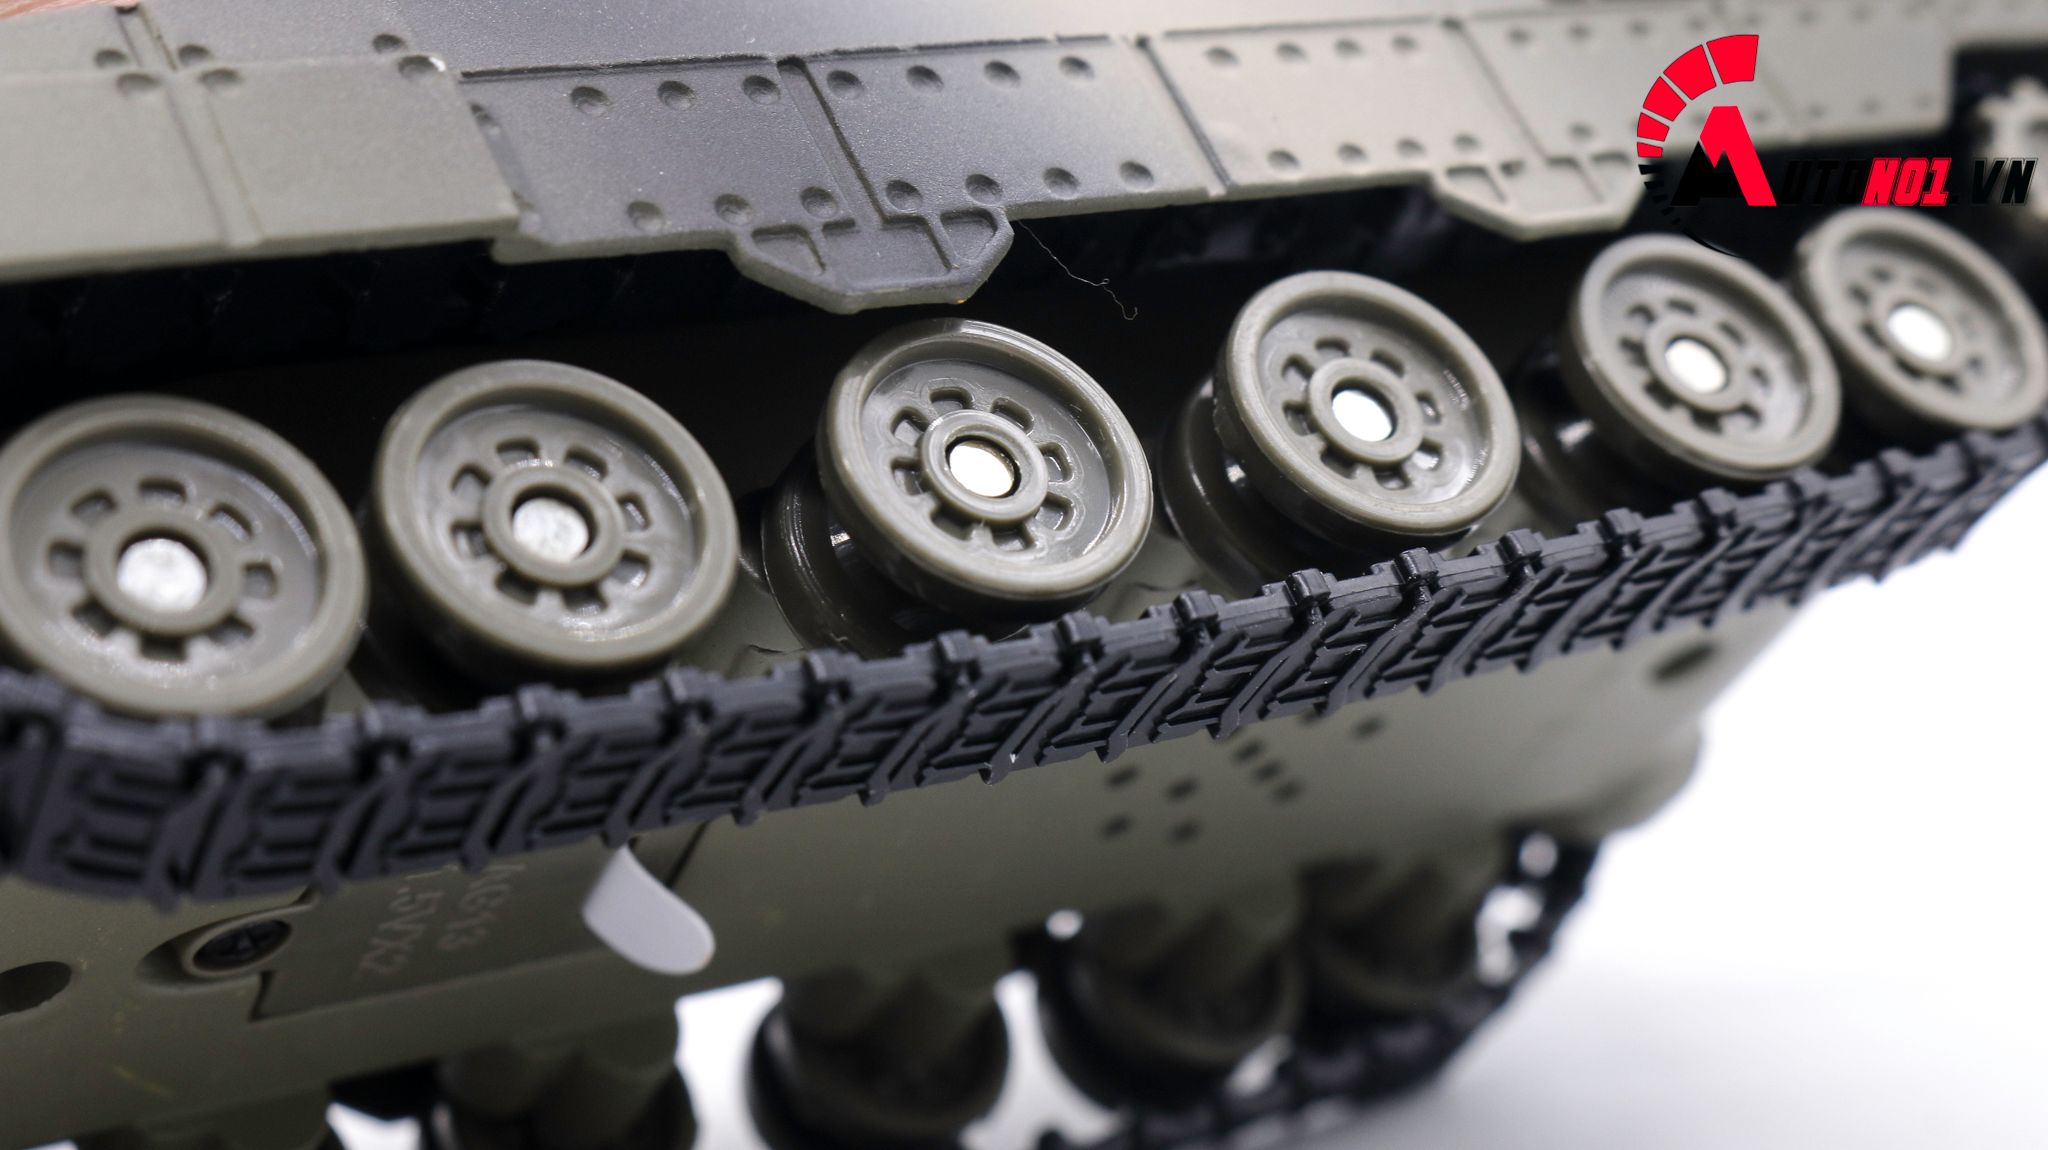  Mô hình xe tăng quân sự 1:32 huayi alloy OT076 